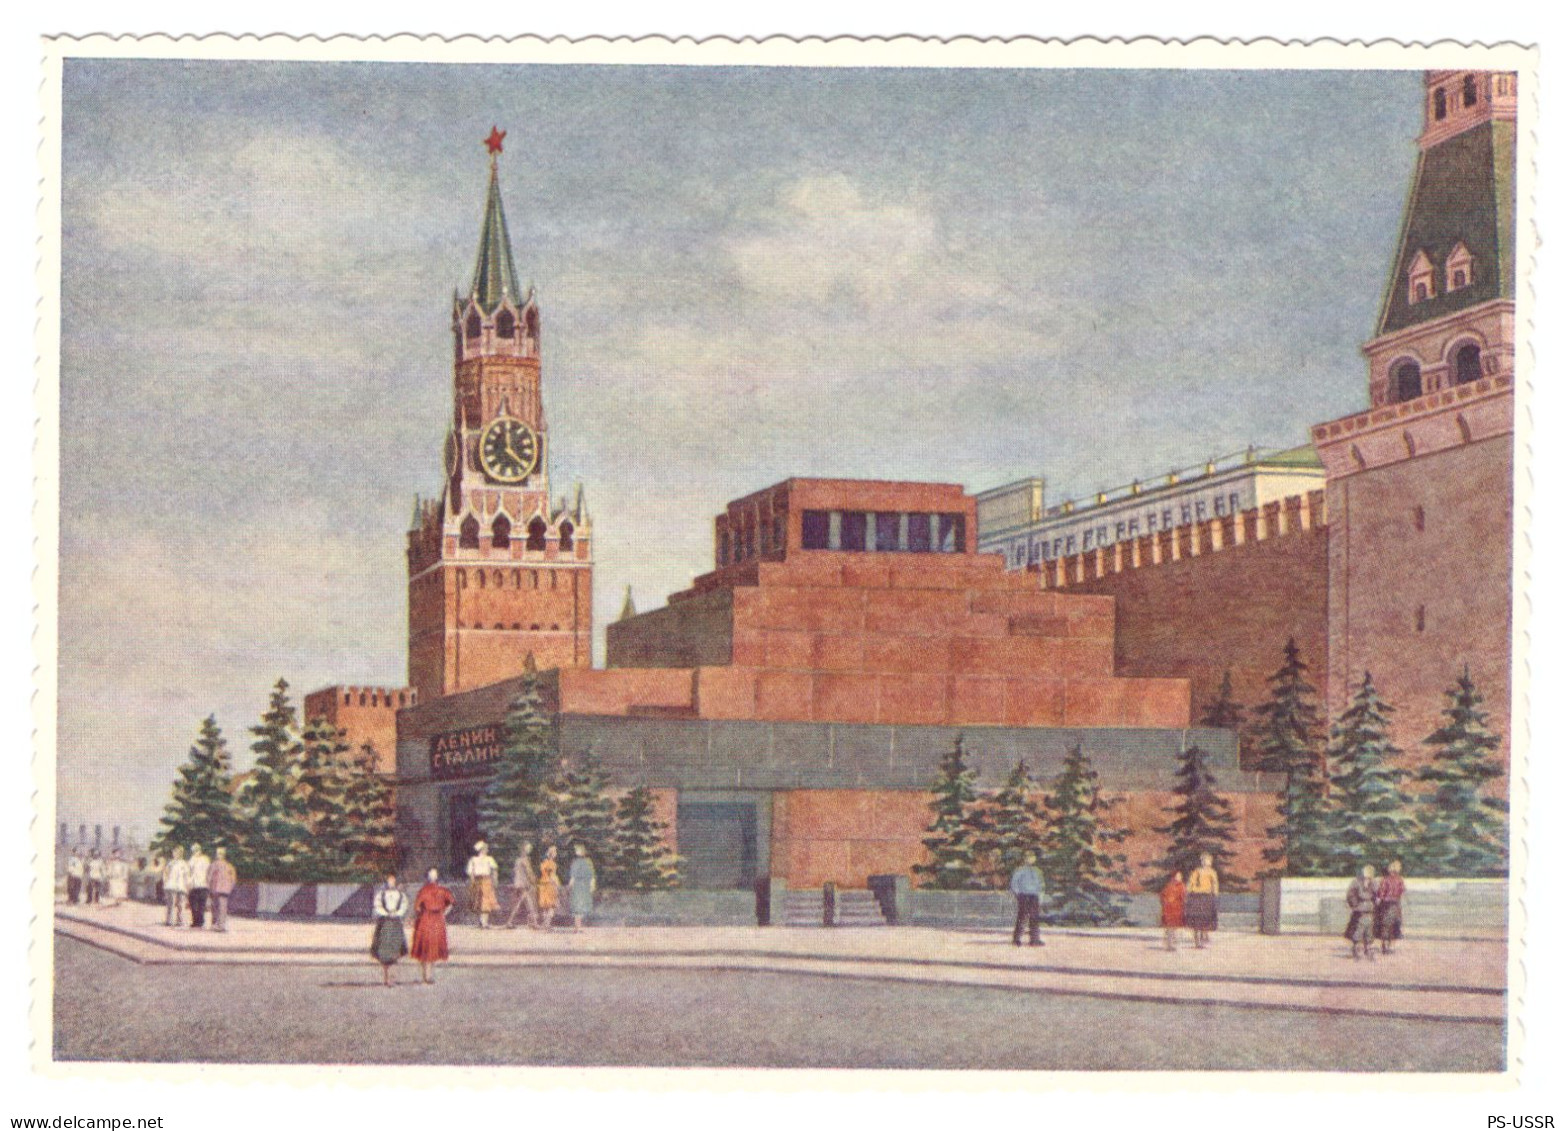 USSR 1954 LENIN STALIN MAUSOLEUM KREMLIN RED SQUARE # 55 POSTAL STATIONERY UNUSED IMPRINTED STAMP GANZSACHE - 1950-59